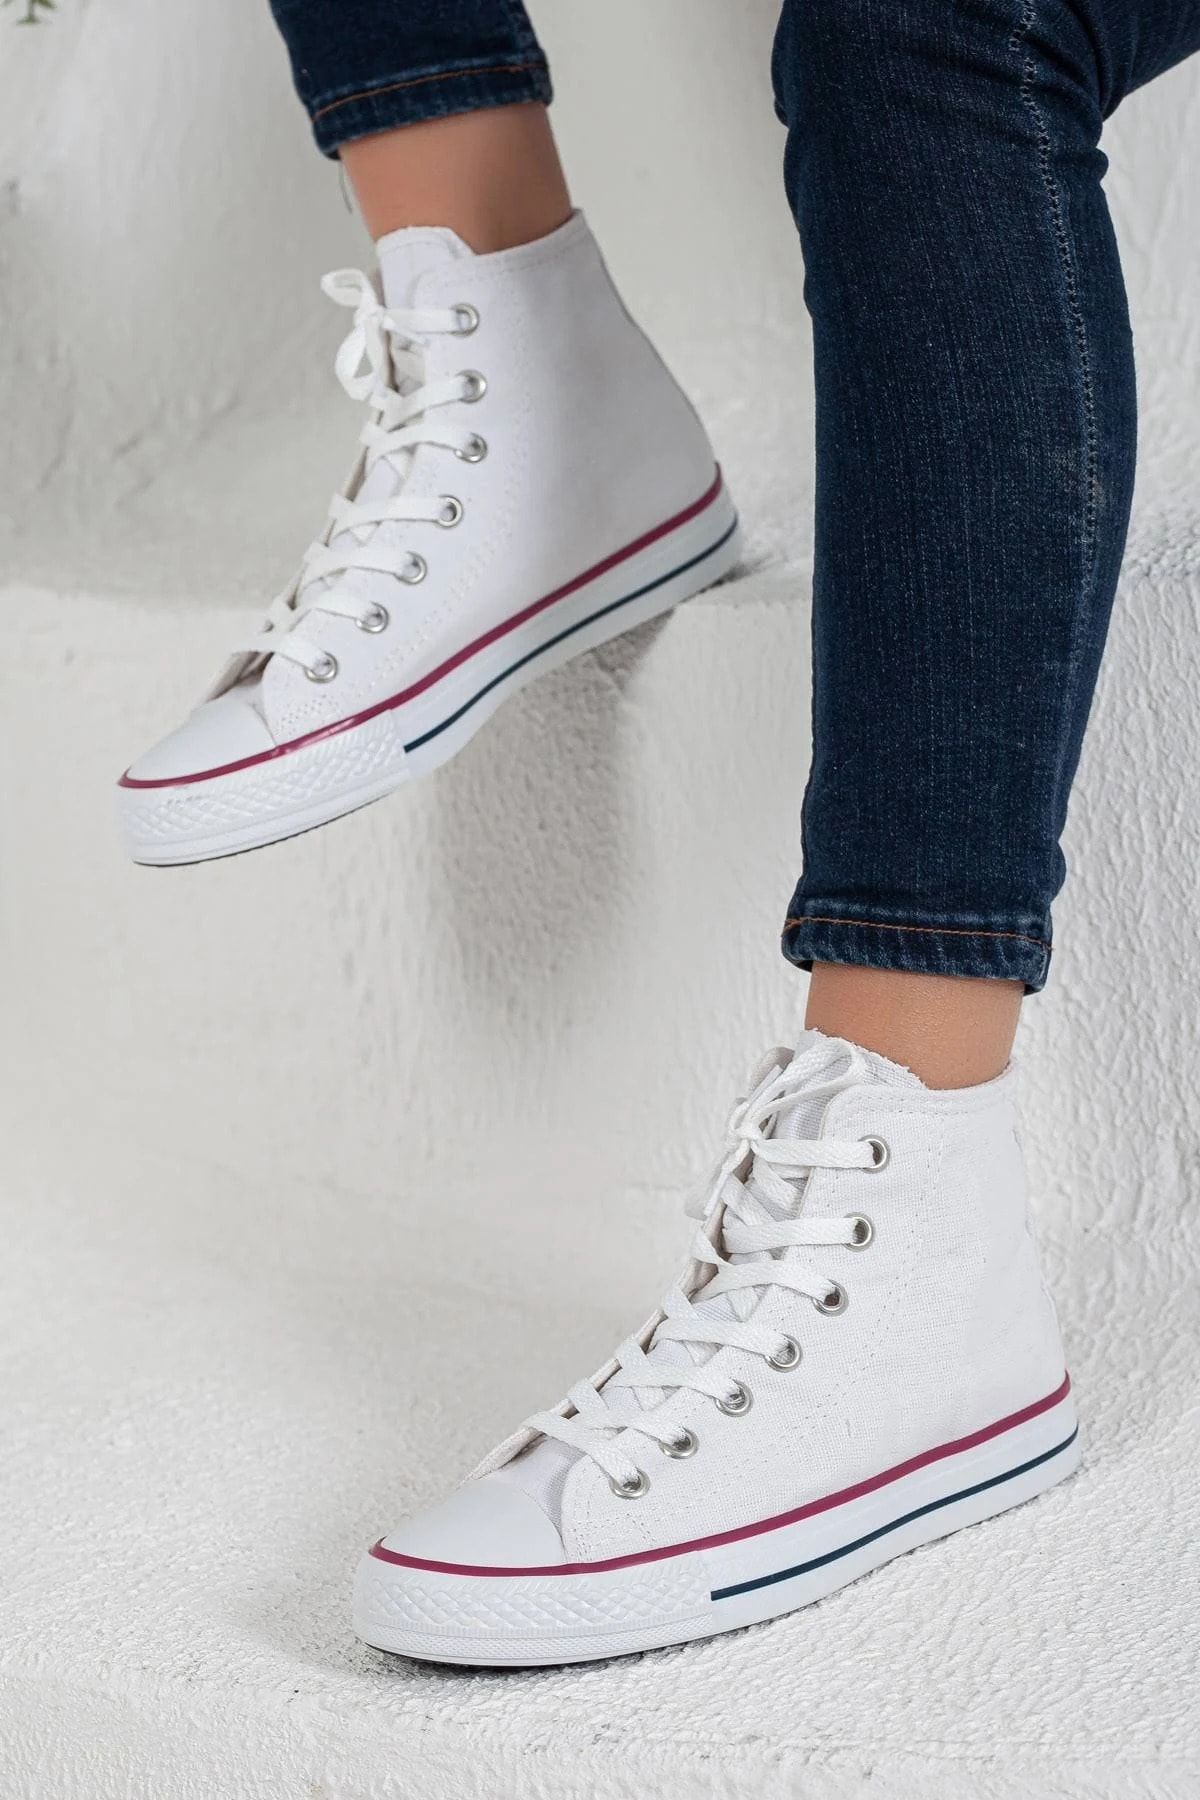 Prego Erkek Sneaker Bilekli Convers Modeli Keten Spor Ayakkabı Beyaz